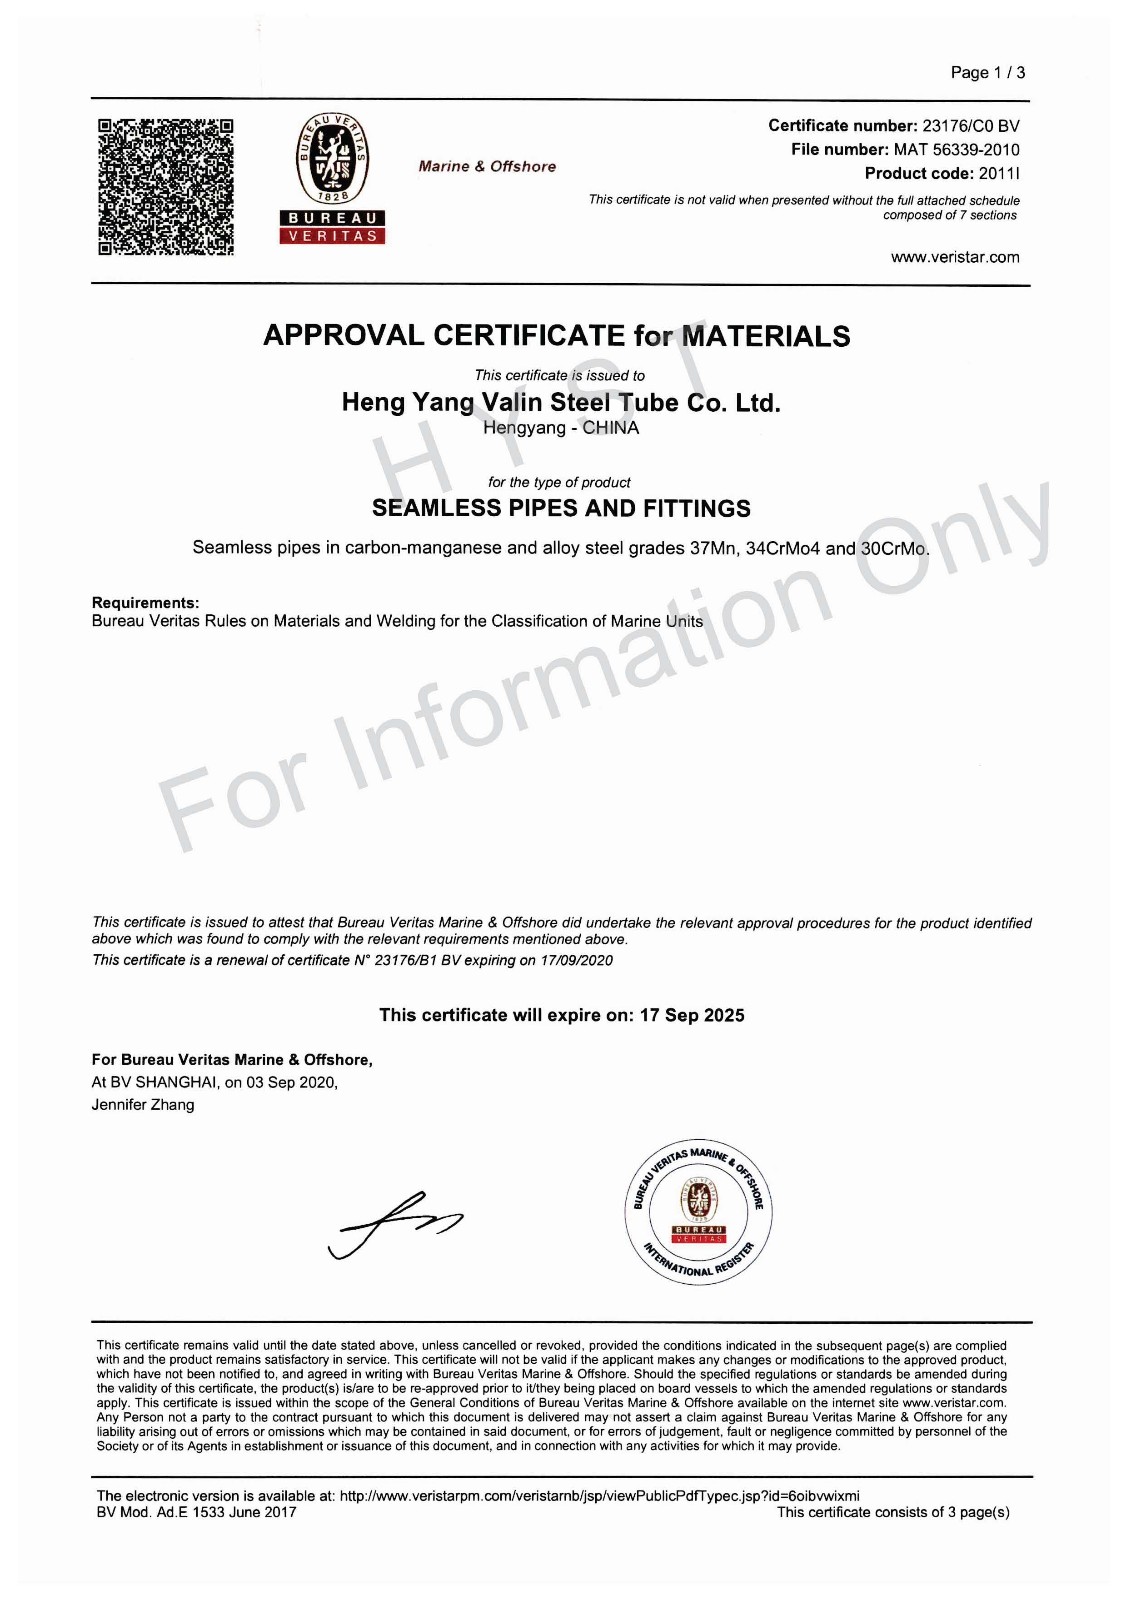 BV Certificate for 37Mn & 30CrMo & 34CrMo4